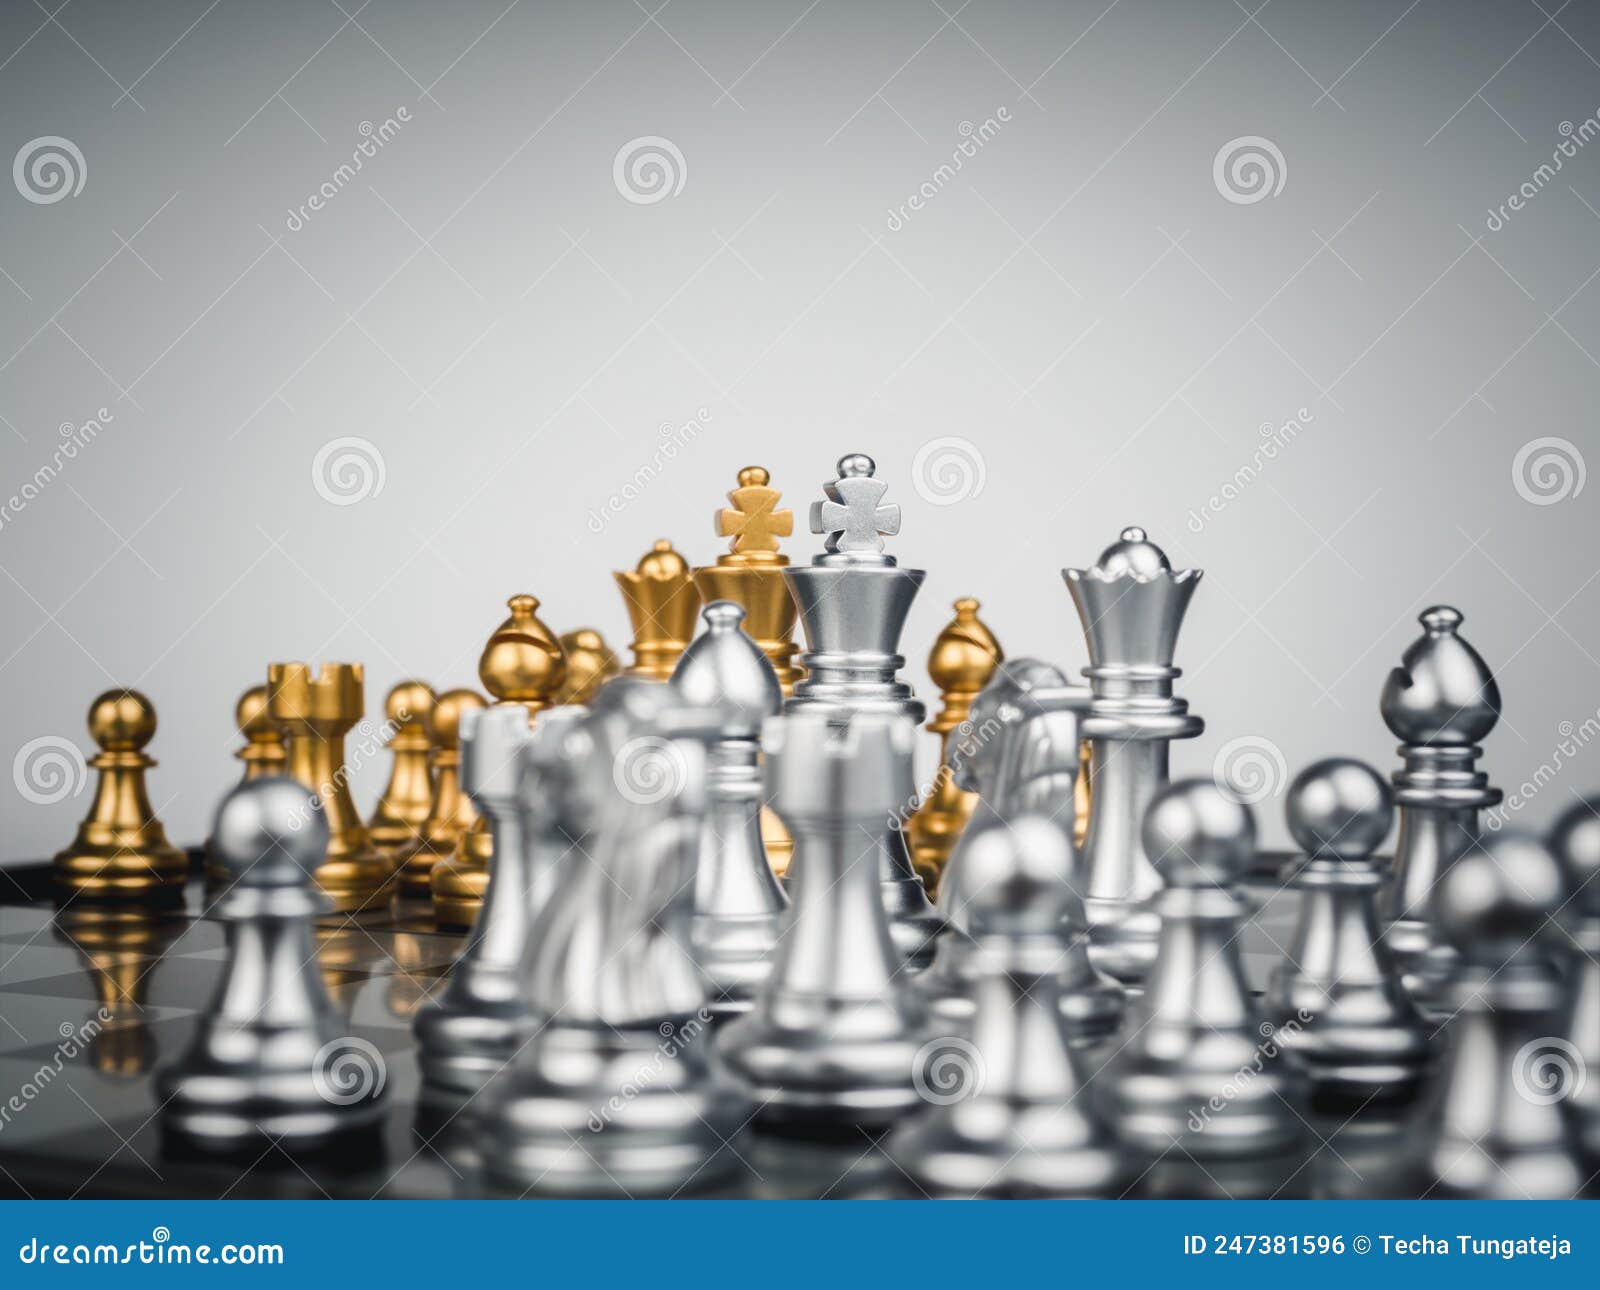 A peça de xadrez do bispo de ouro na frente dos peões de ouro no